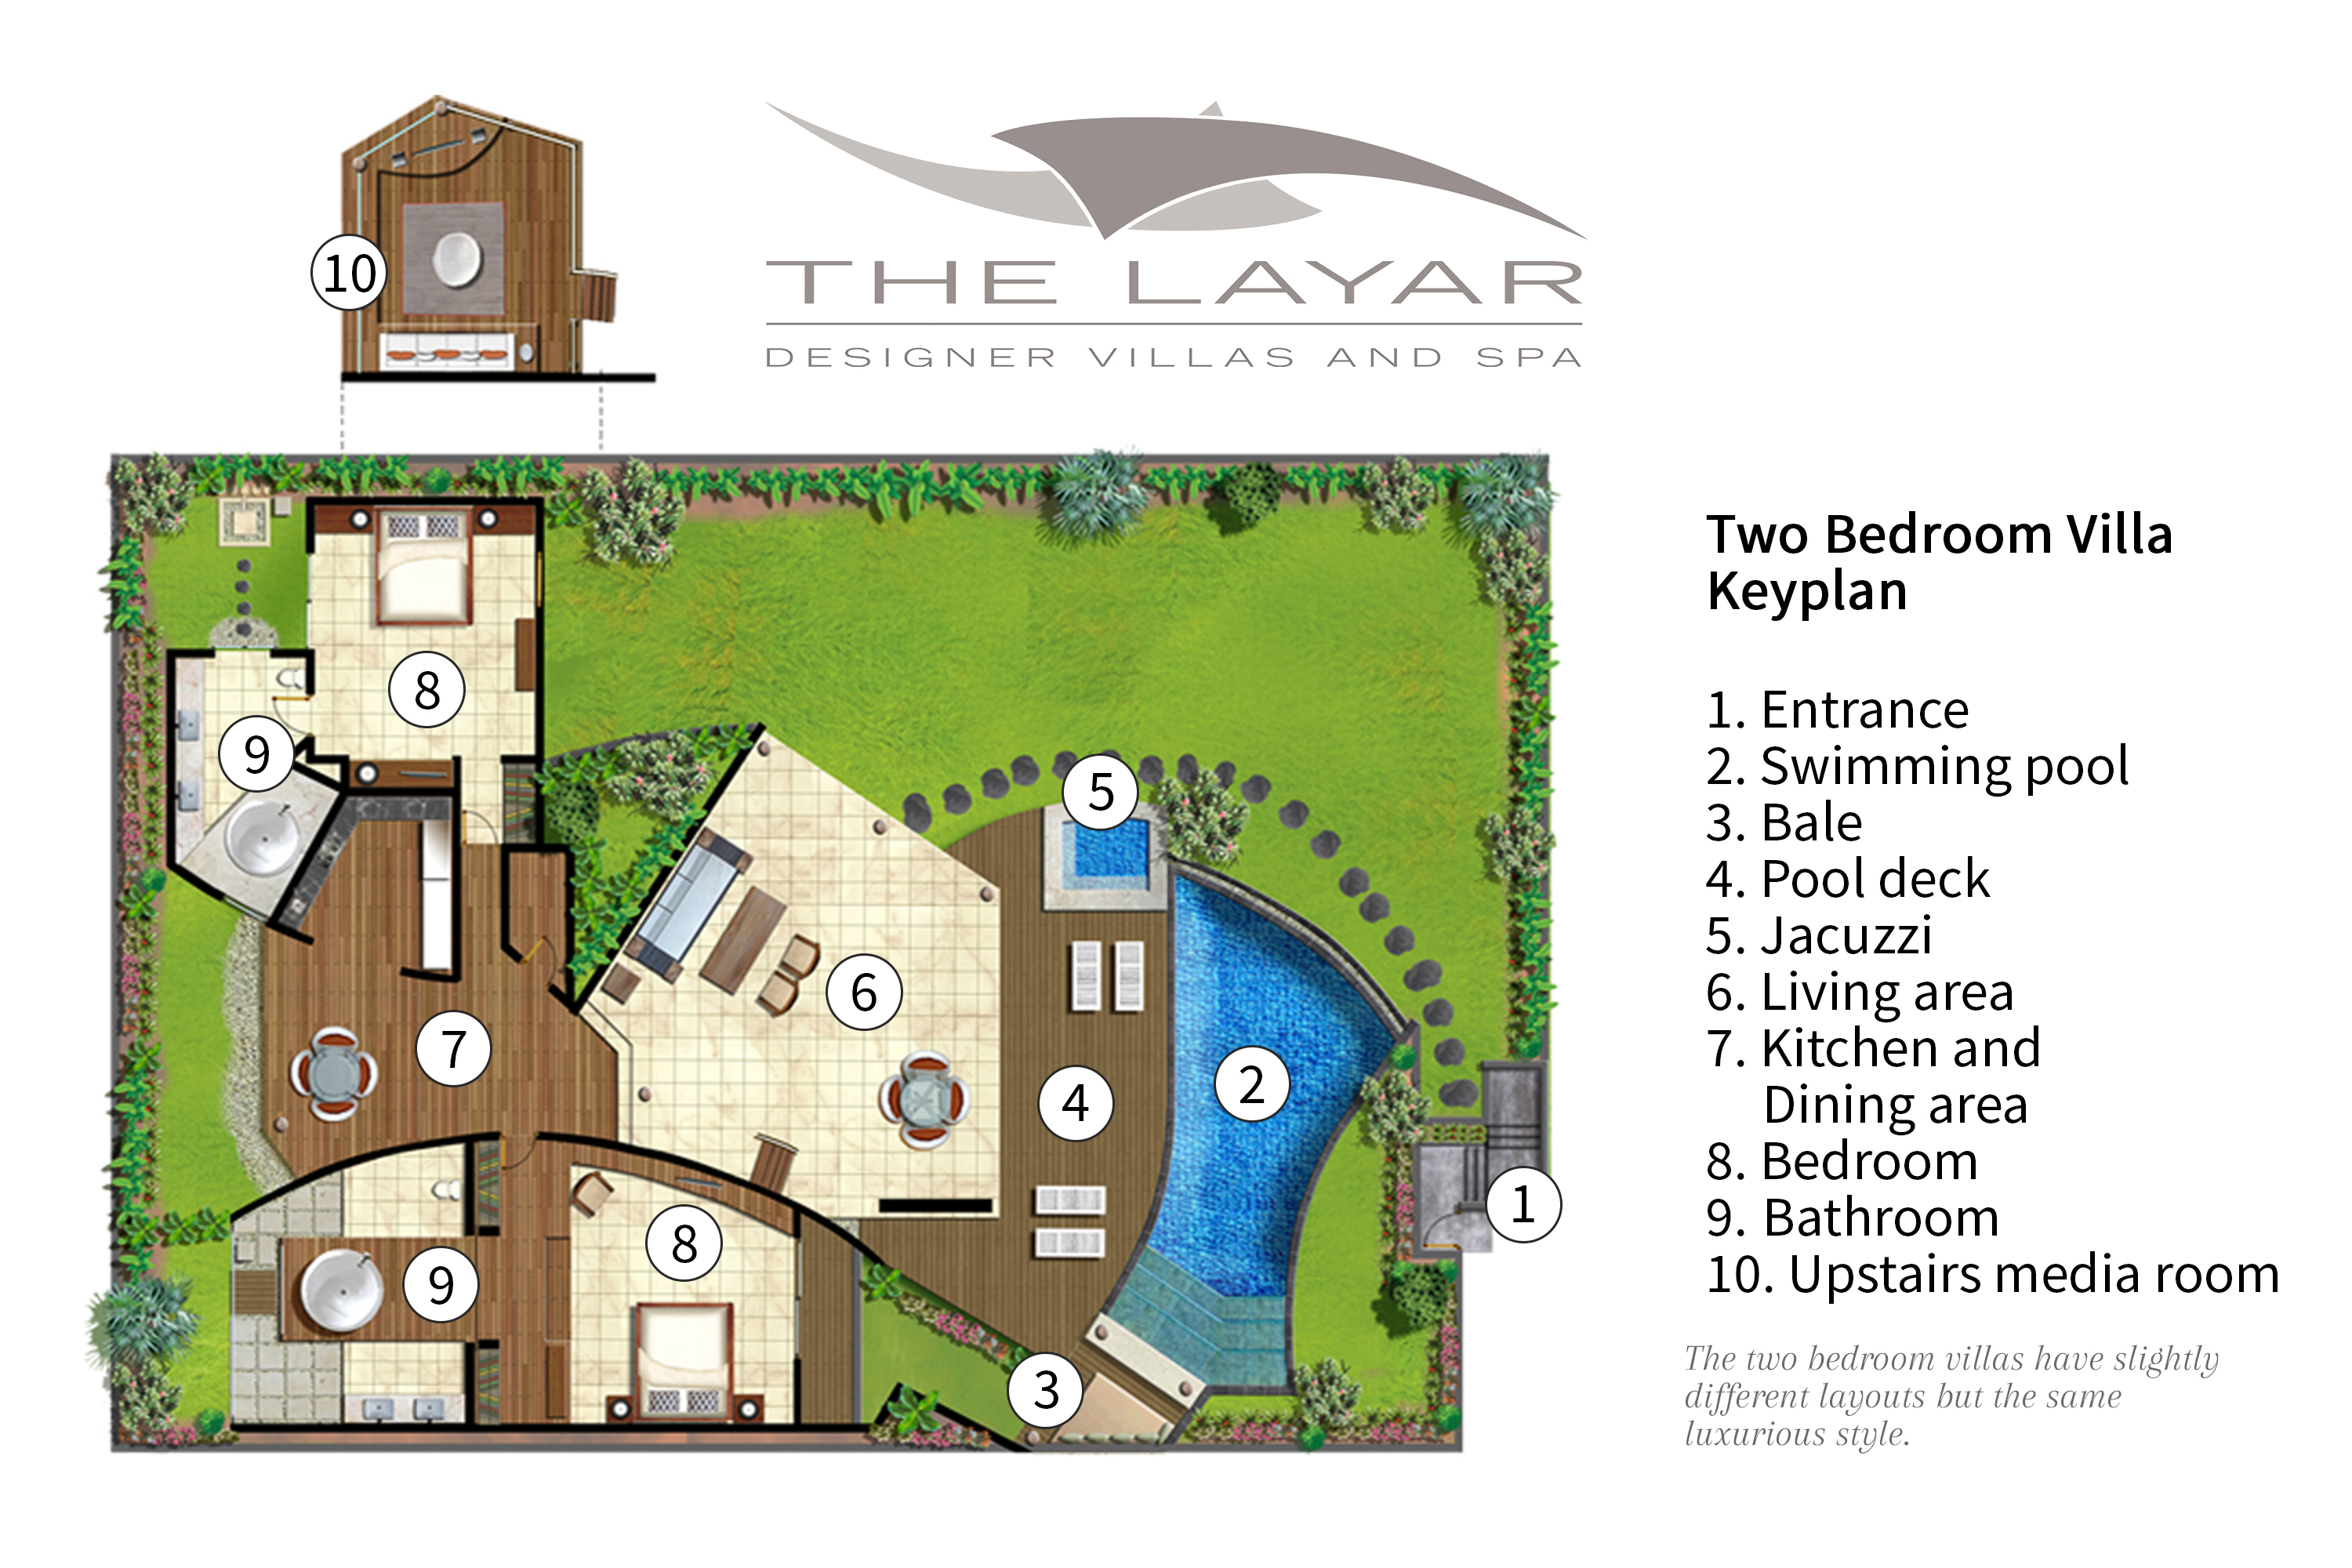 The Layar - two bedroom villa